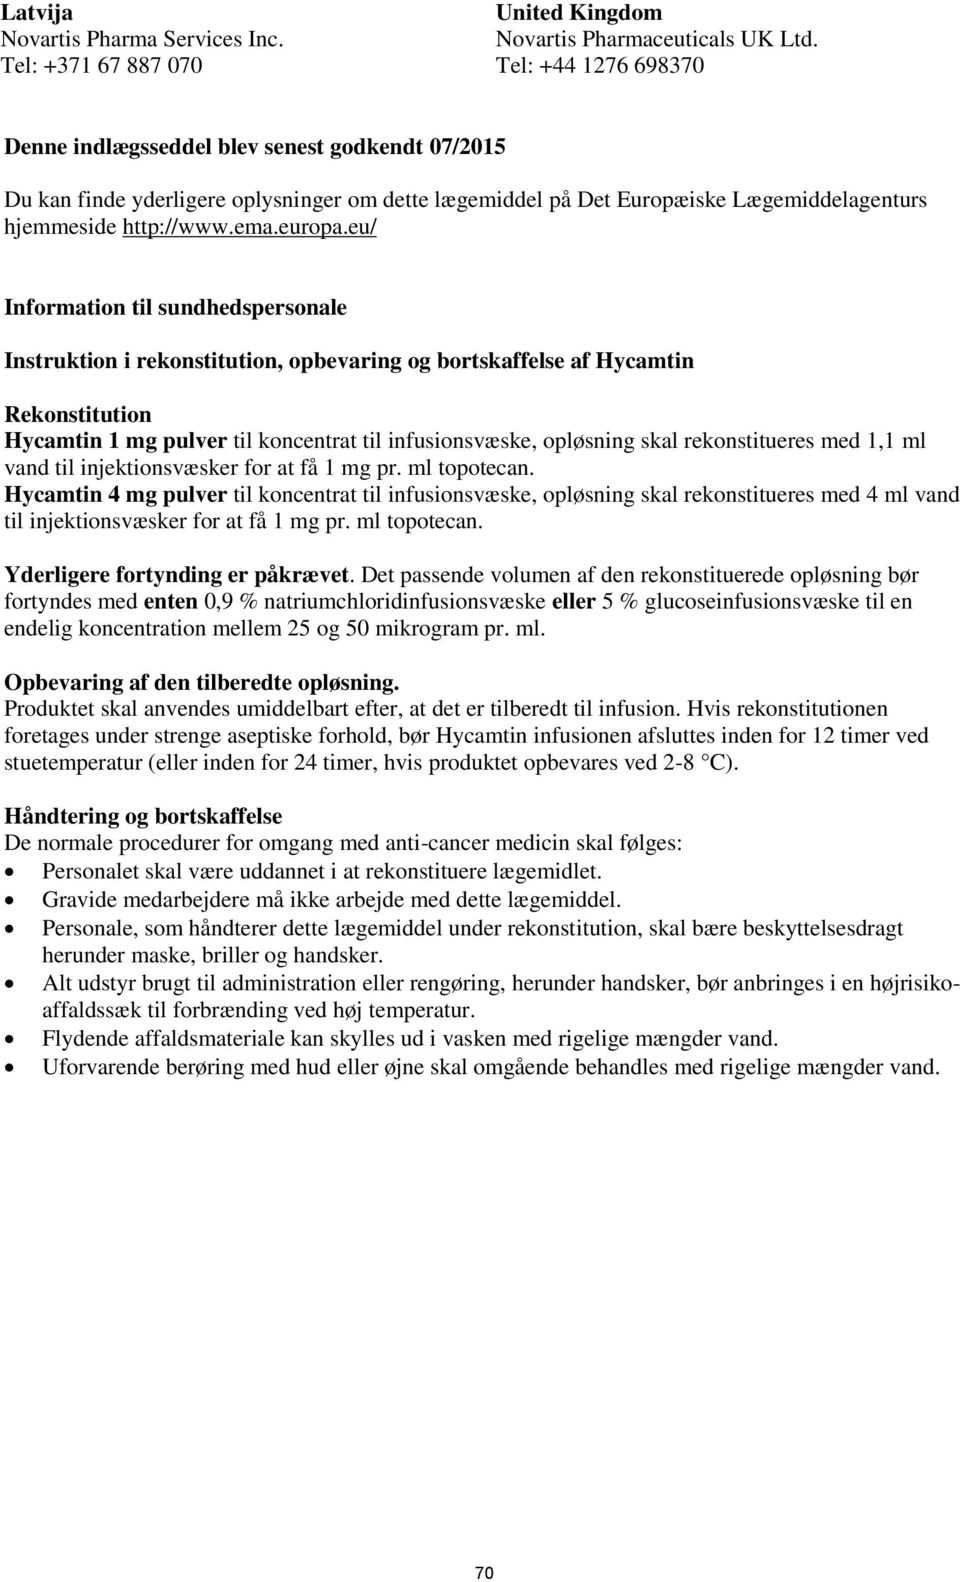 eu/ Information til sundhedspersonale Instruktion i rekonstitution, opbevaring og bortskaffelse af Hycamtin Rekonstitution Hycamtin 1 mg pulver til koncentrat til infusionsvæske, opløsning skal